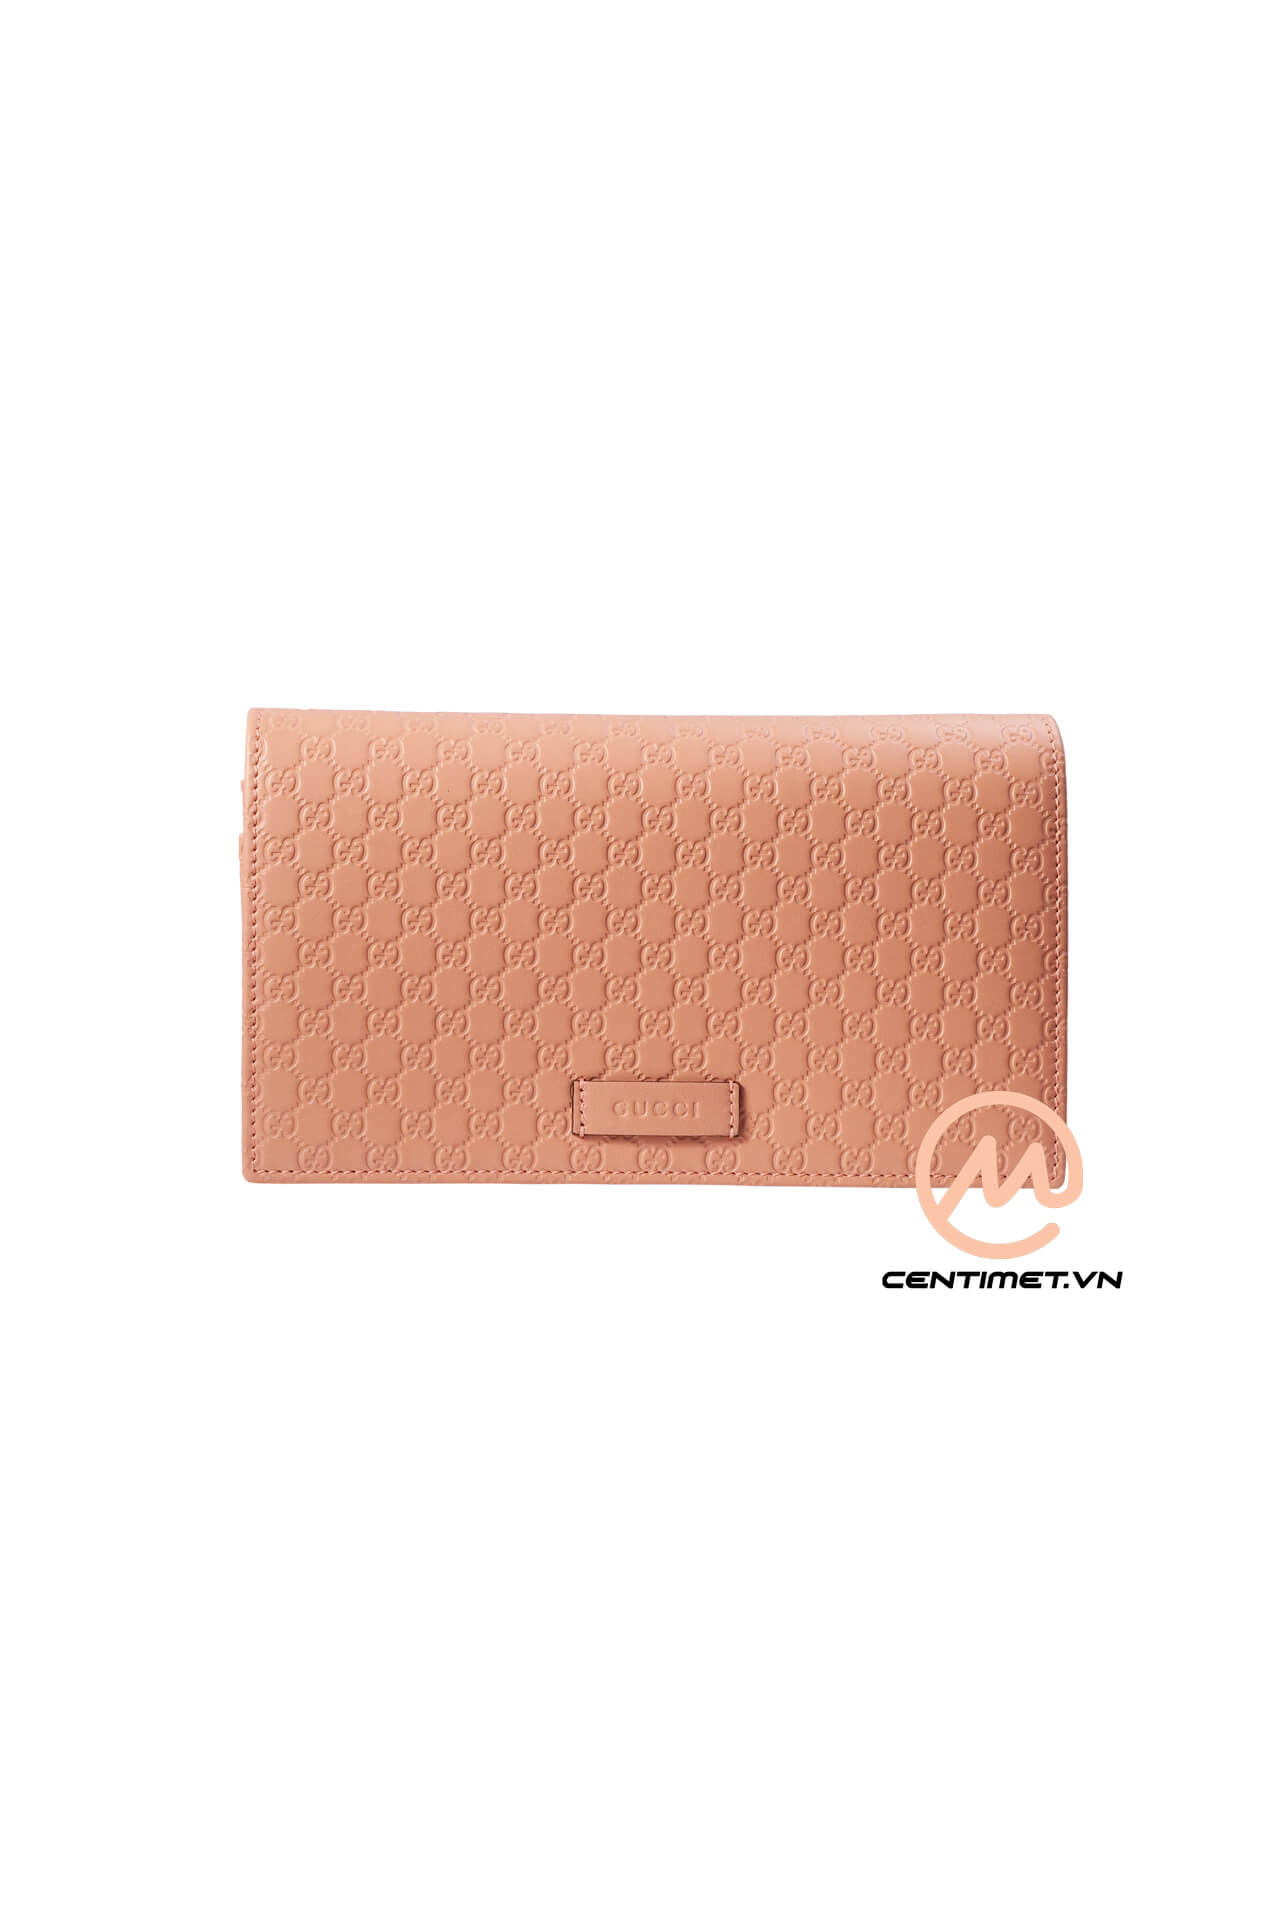 Tui Gucci Guccissima Leather Pink Bag-4